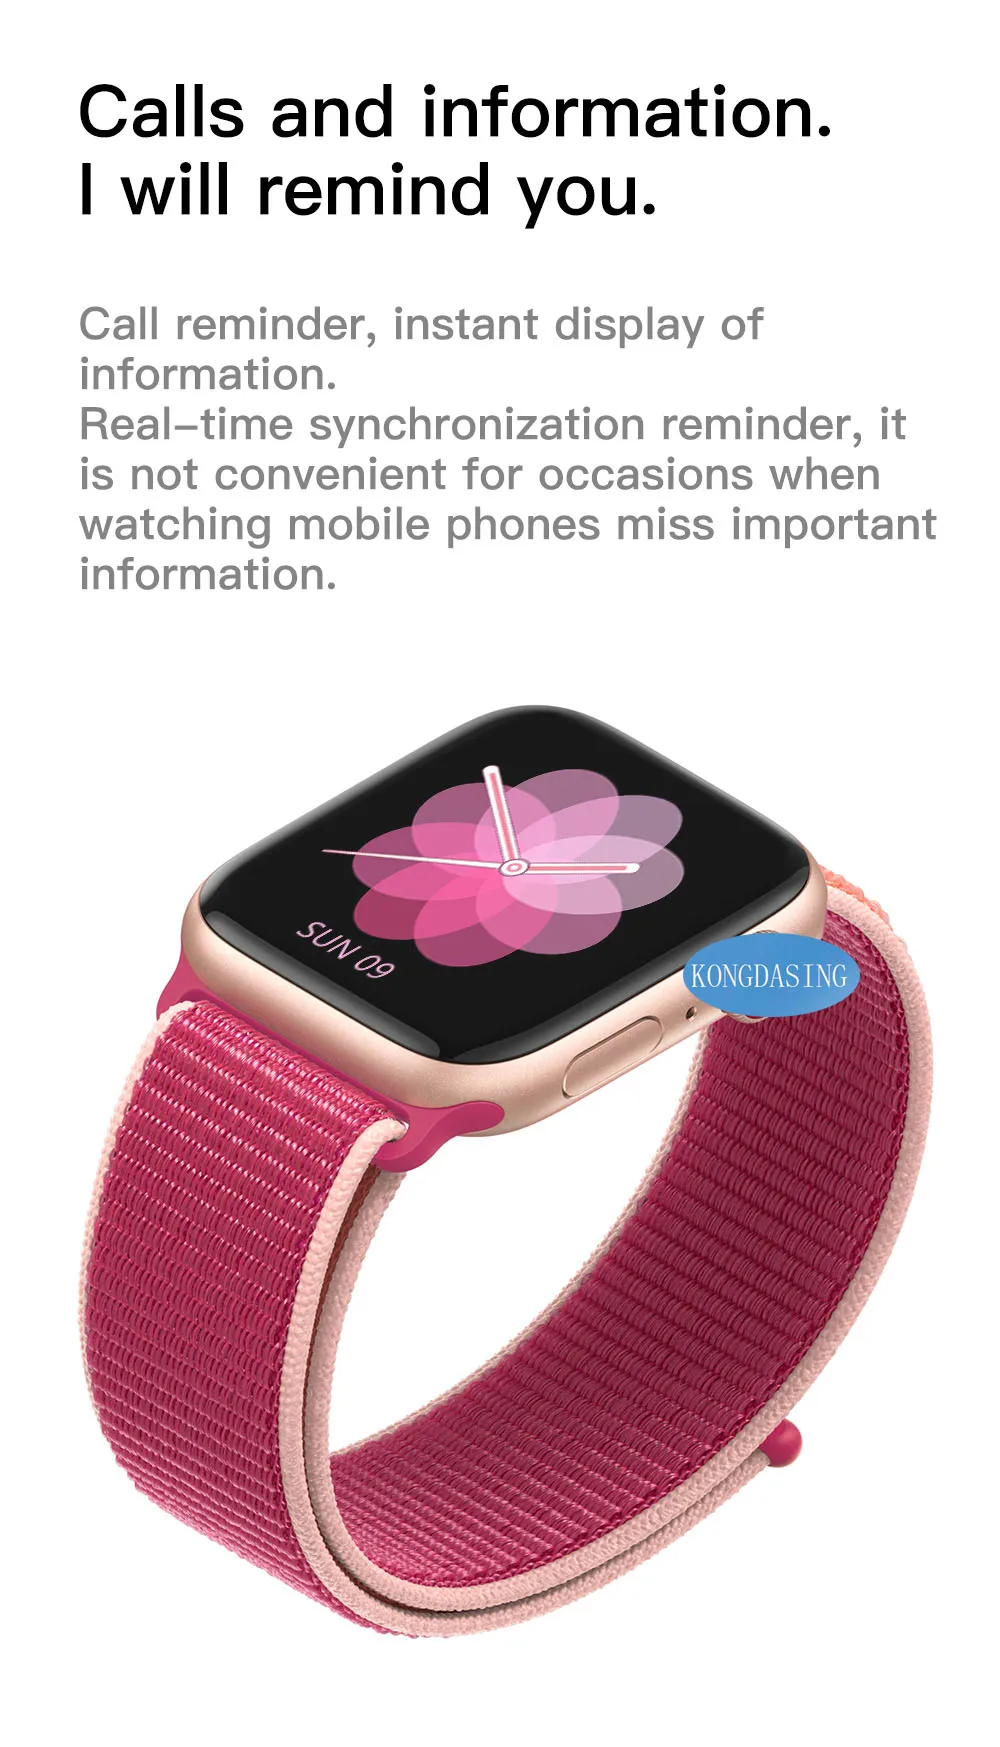 IWO 12 часы серии 5 1:1 Смарт-часы 40 мм 44 мм Bluetooth часы для apple iPhone Android телефон сердечный ритм кровяное давление